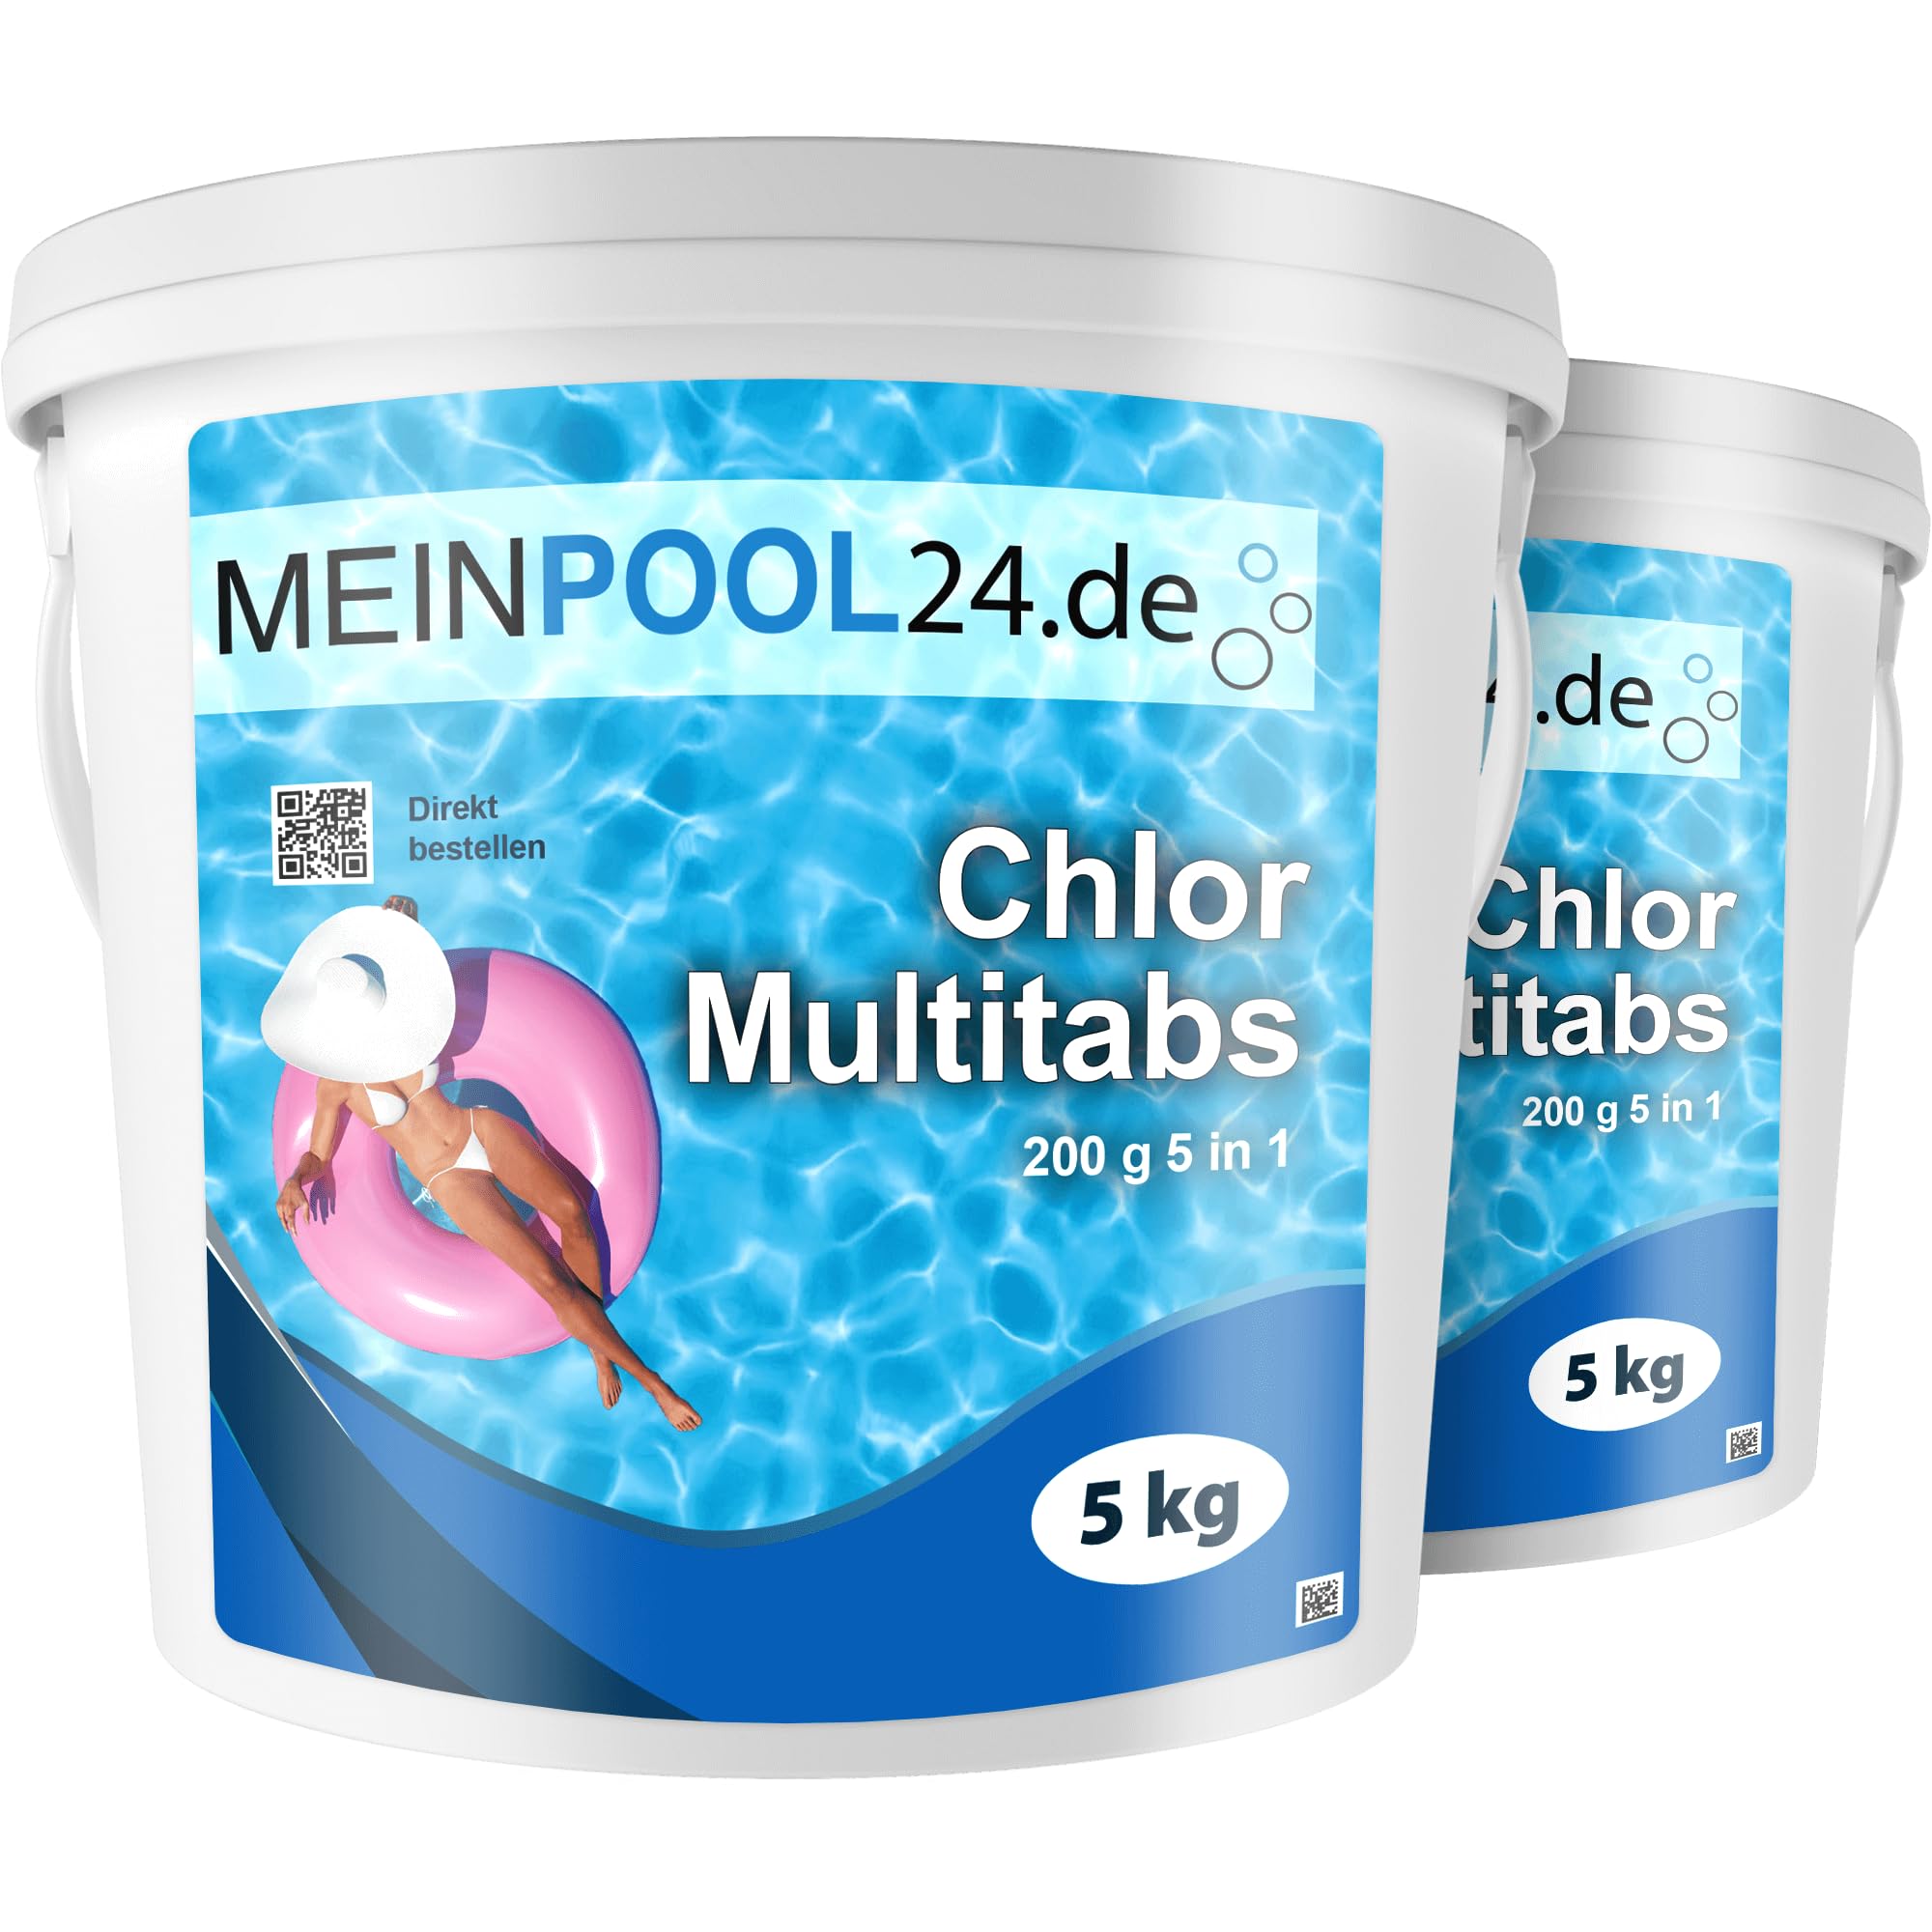 10 kg (2 x 5 kg) Chlor Multitabs 200 g 5 in 1 von Meinpool24.de - Für den Pool mit 5 Phasen Pflegewirkung für sauberes und hygienisches Poolwasser